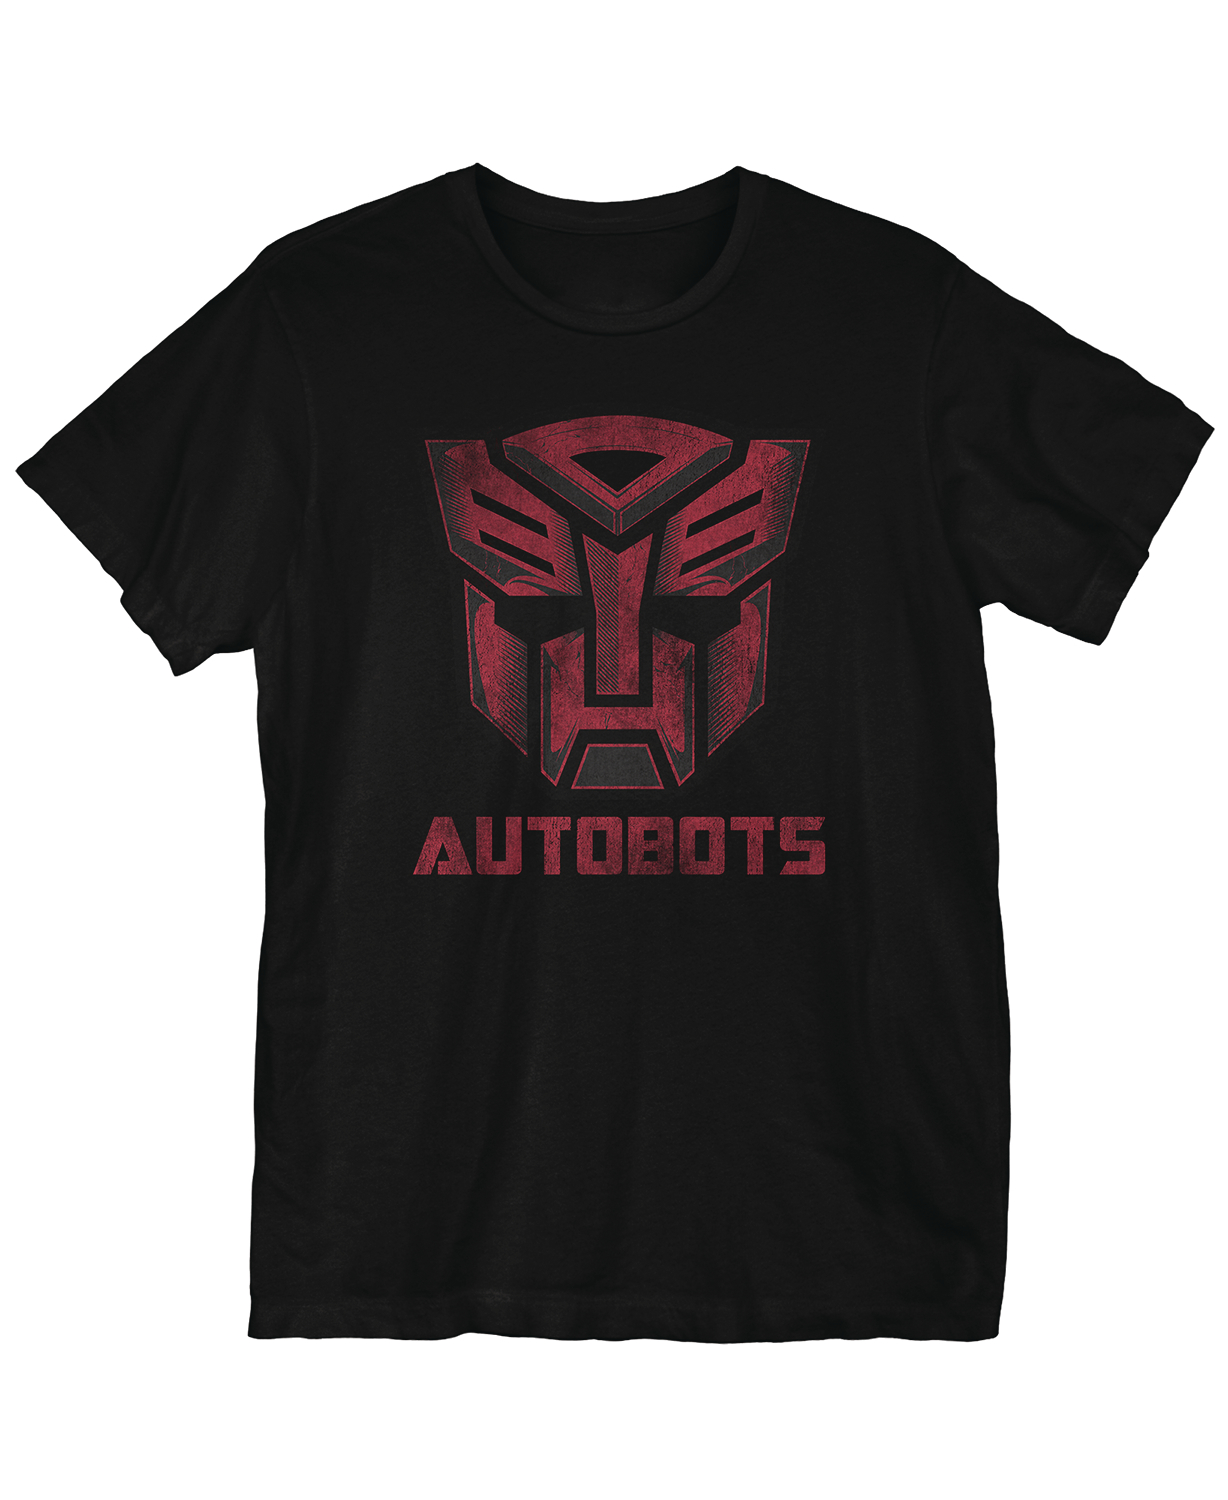 Transformers Bots Meets The Eye T-Shirt XXL